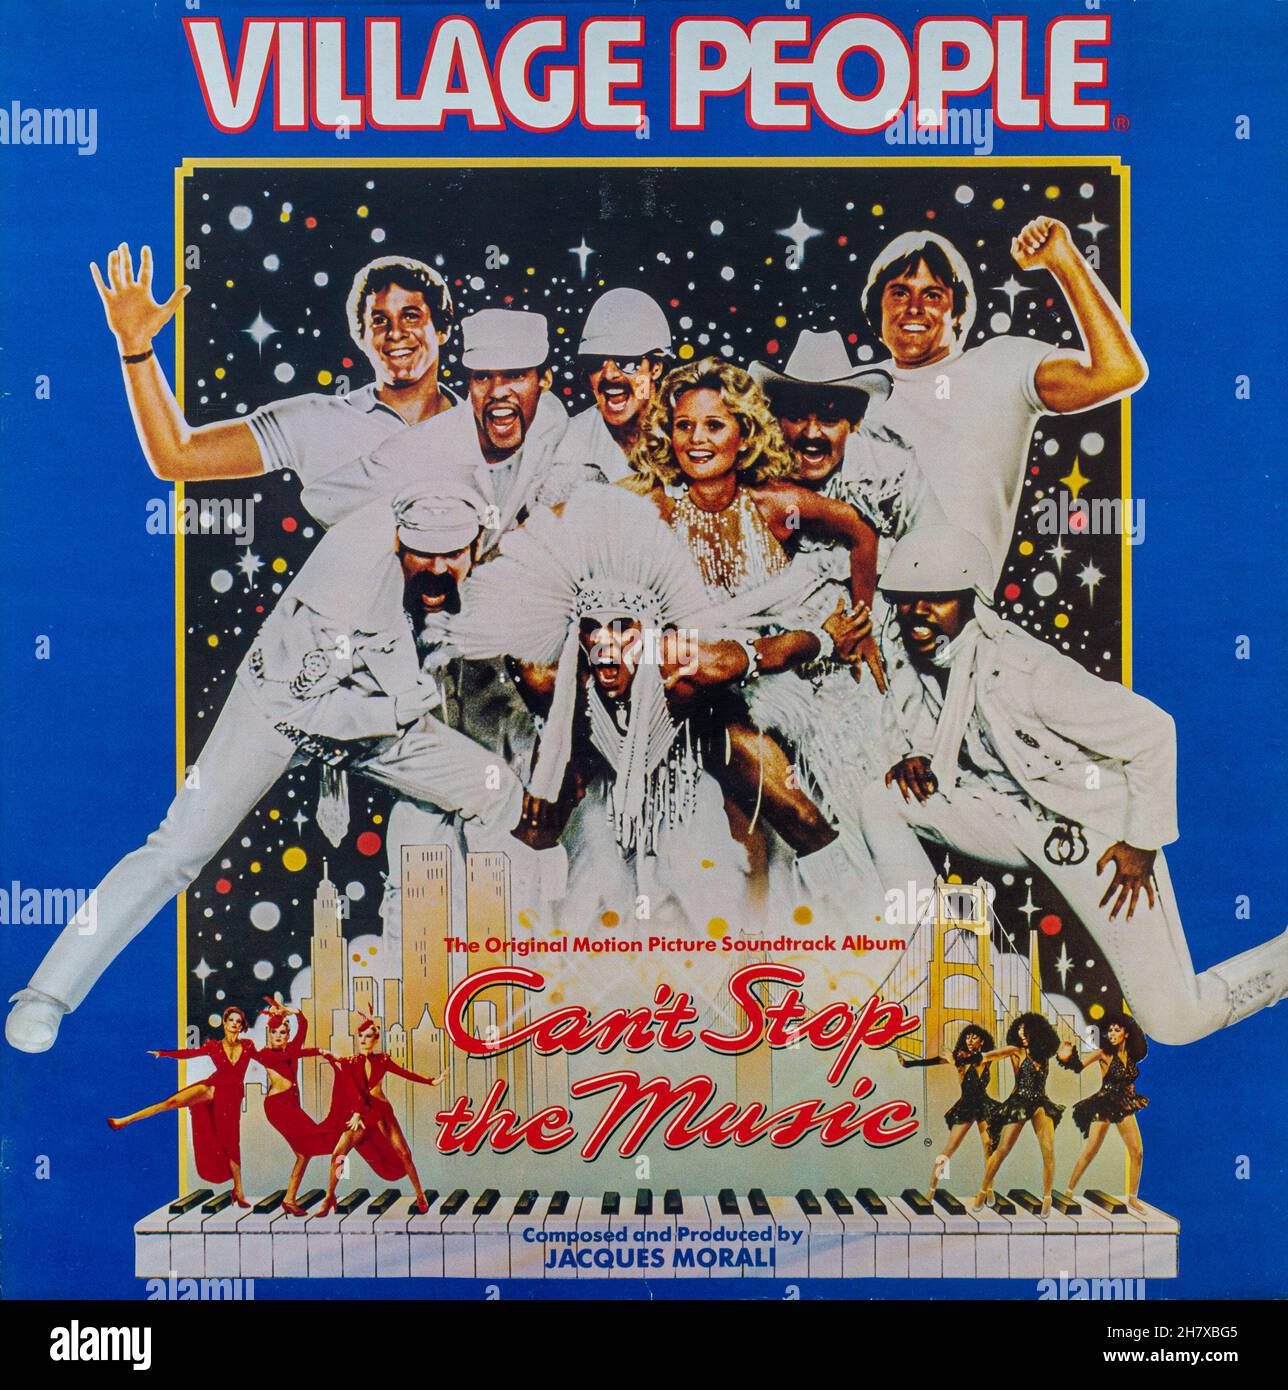 Village People, Can't Stop the Music, copertina del disco in vinile 1980, album della colonna sonora del gruppo discografico americano Foto Stock